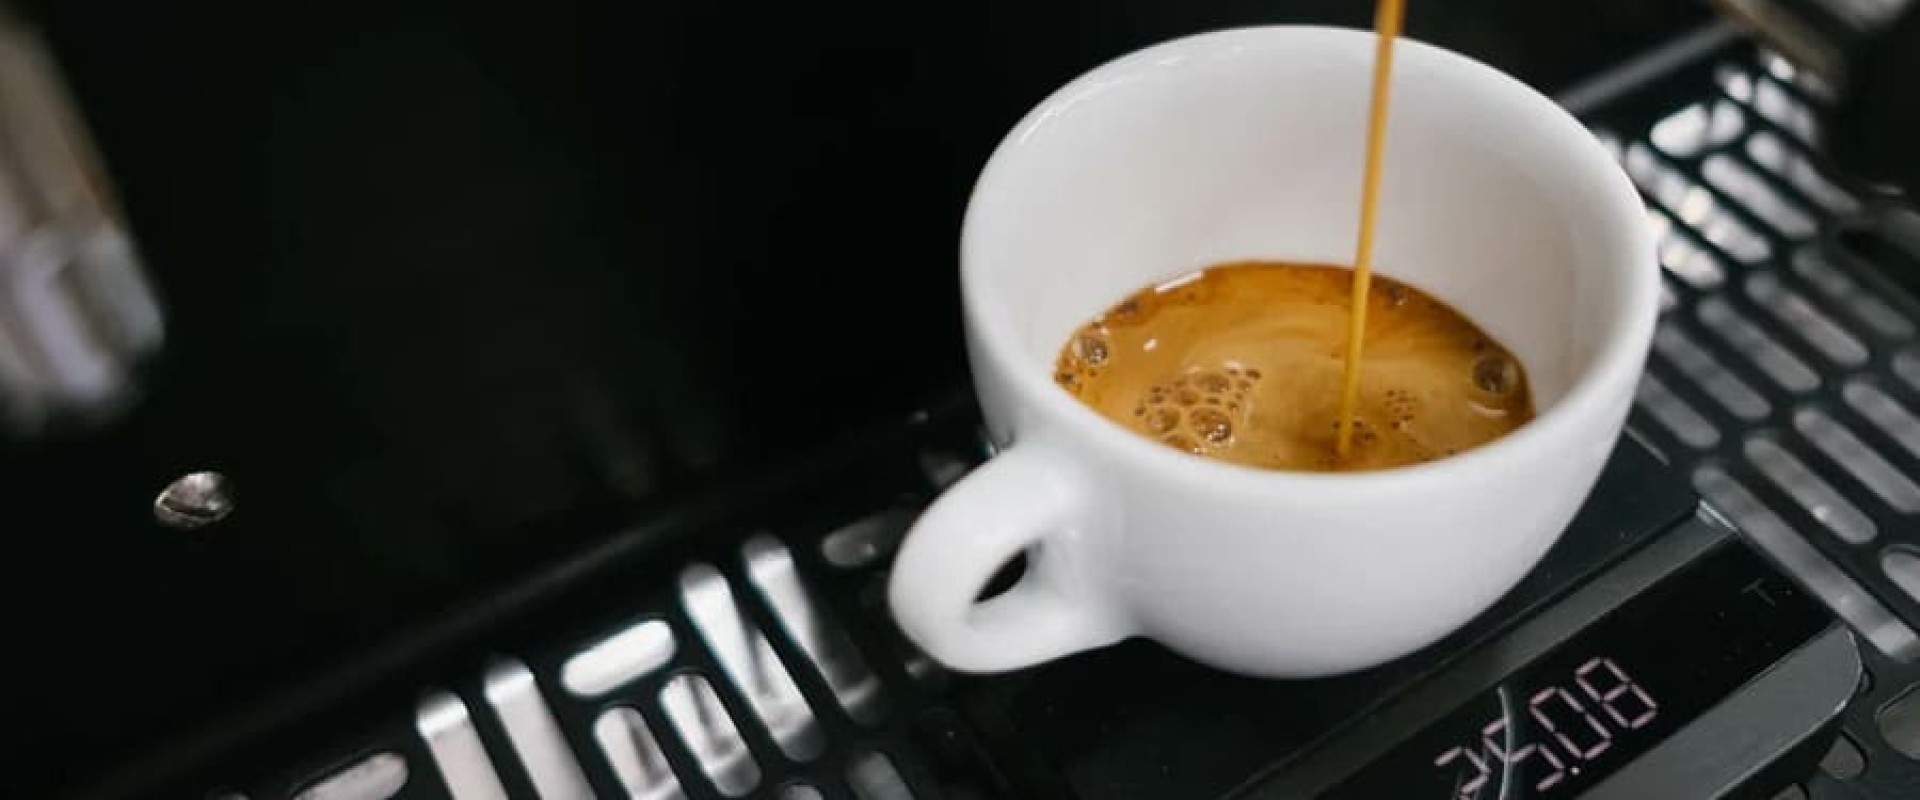 «Общепит всё больше переходит на российских обжарщиков кофе»: Михаил Шаров, Tasty Coffee